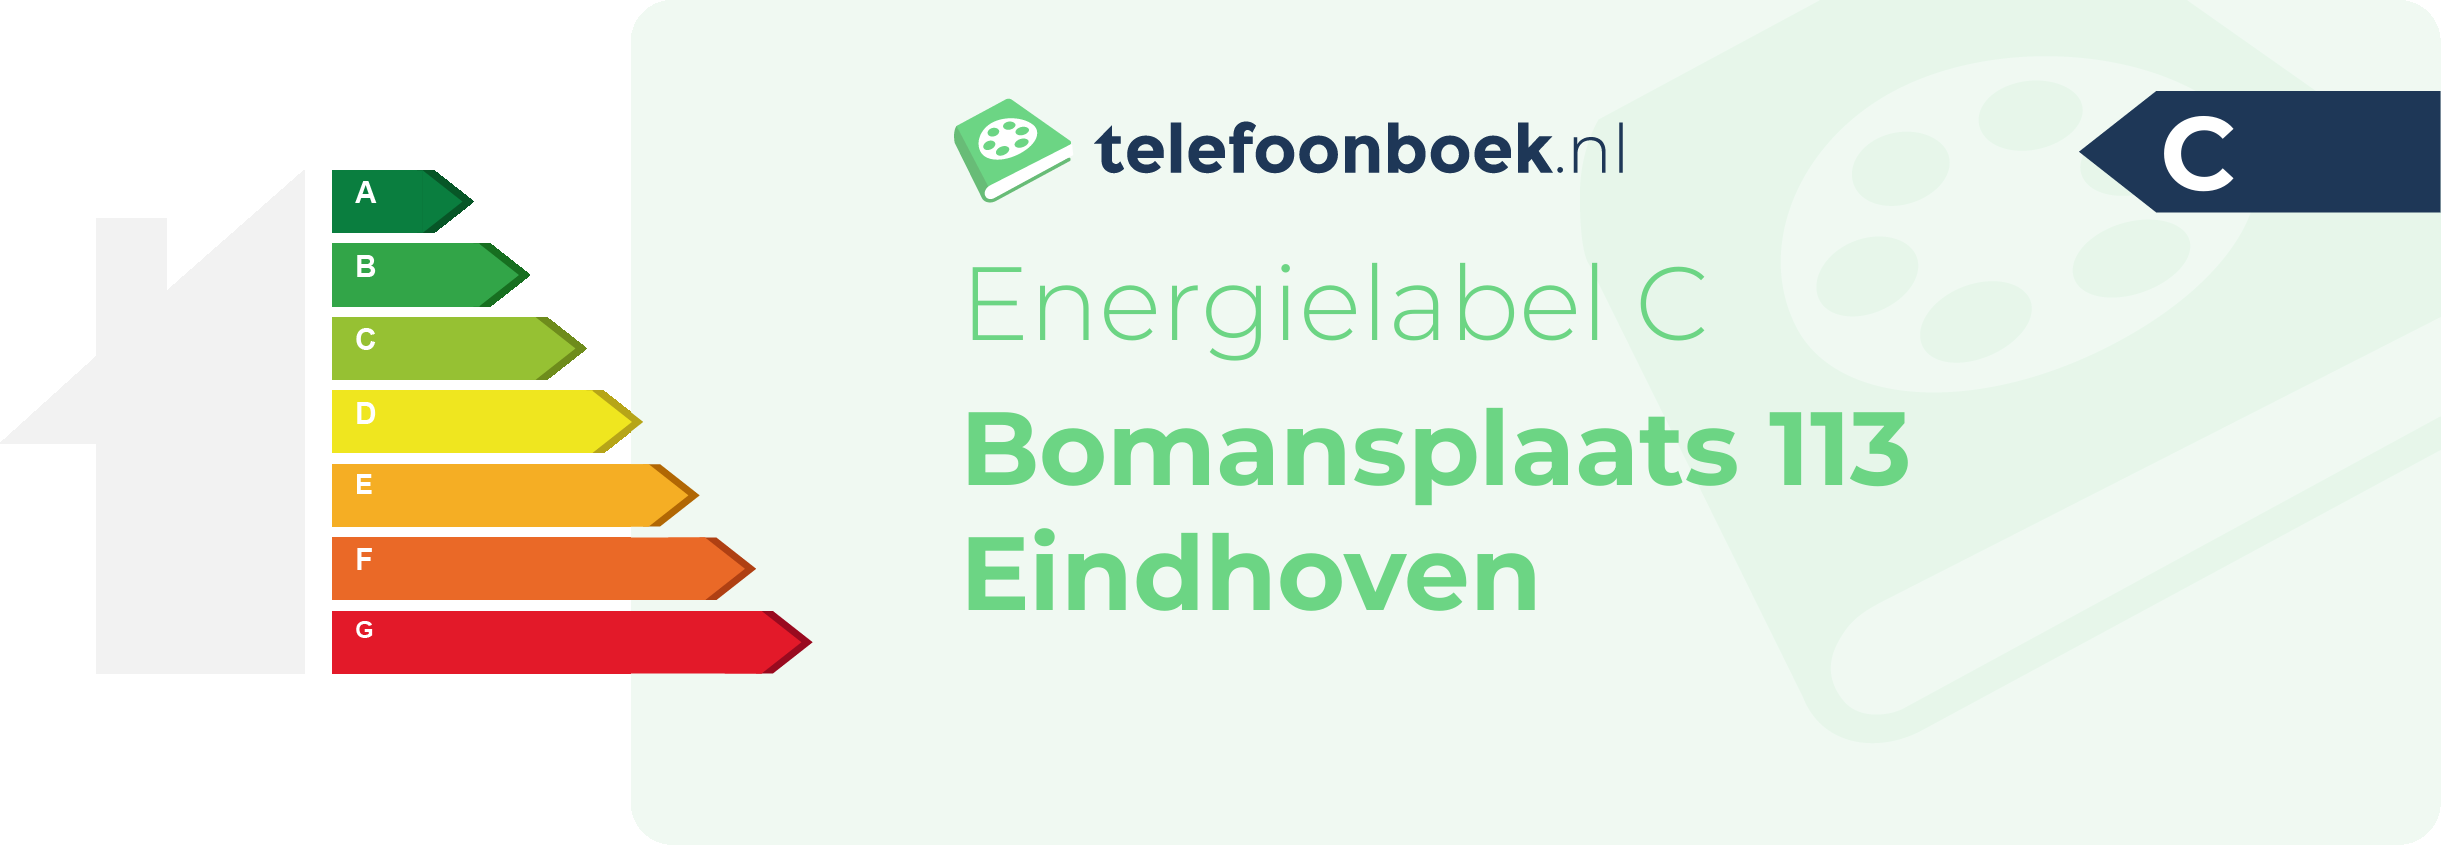 Energielabel Bomansplaats 113 Eindhoven